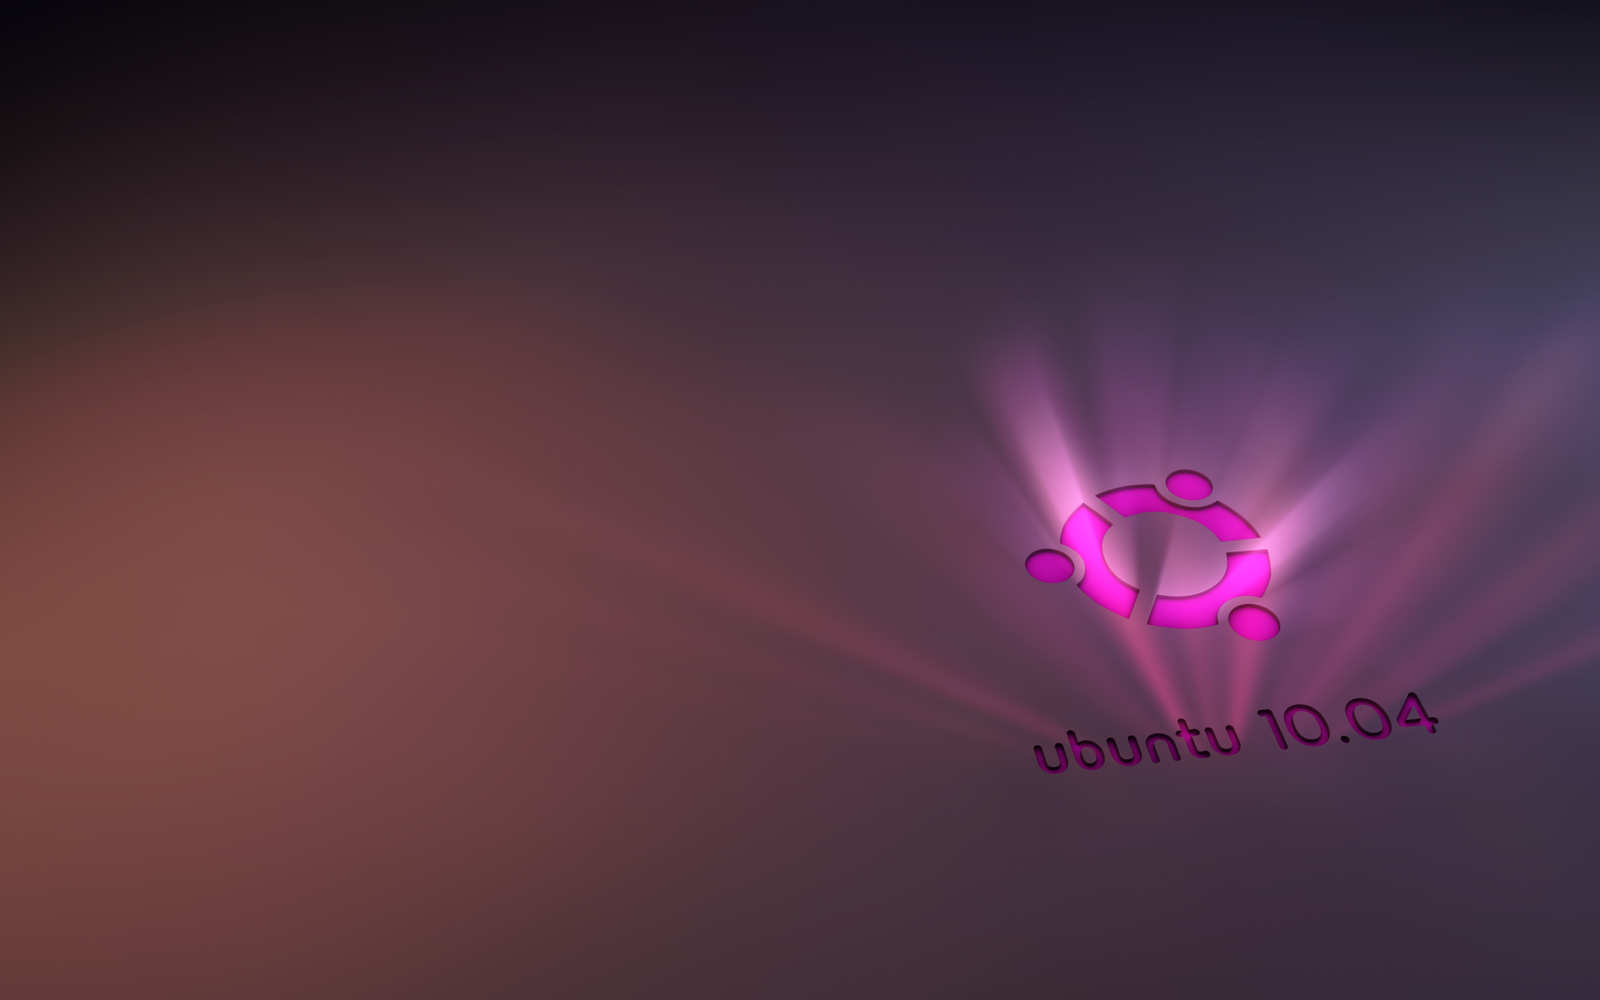 sfondo di ubuntu gnome,viola,rosa,viola,leggero,rosso